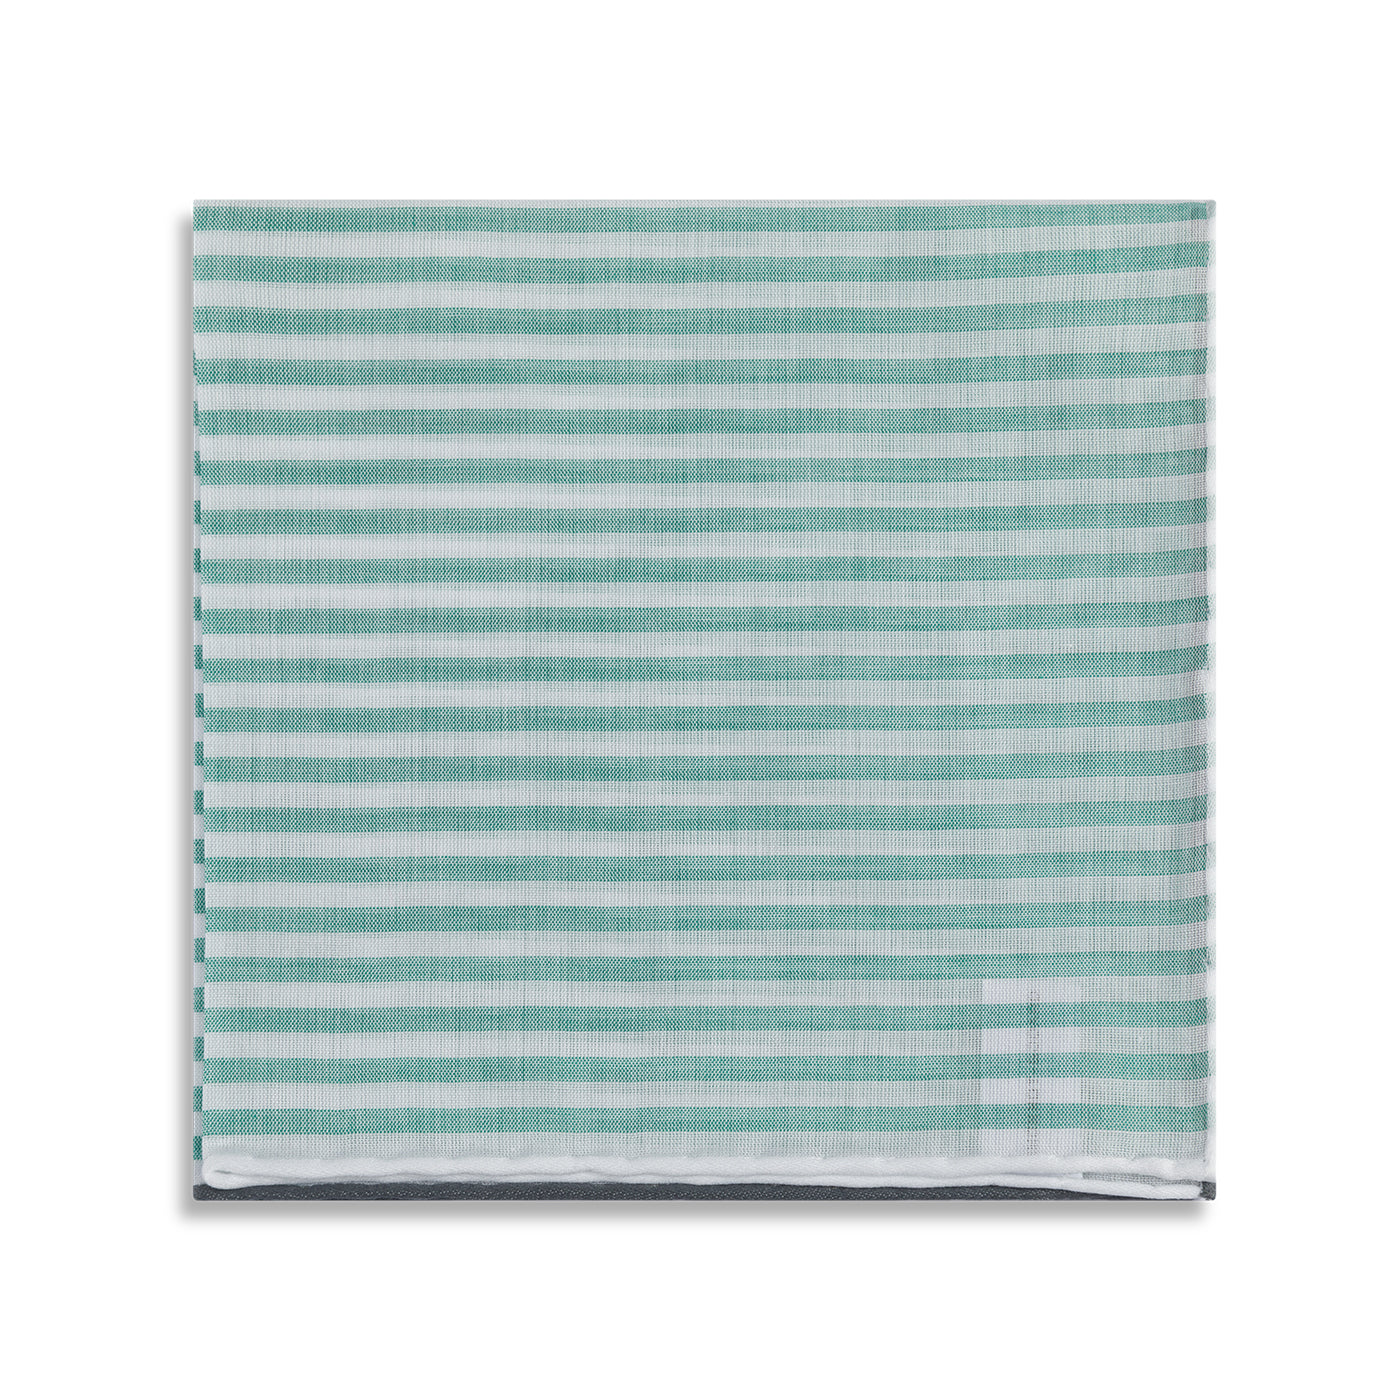 Simonnot Godard "Buren" Pocket Square with Green & White Stripes